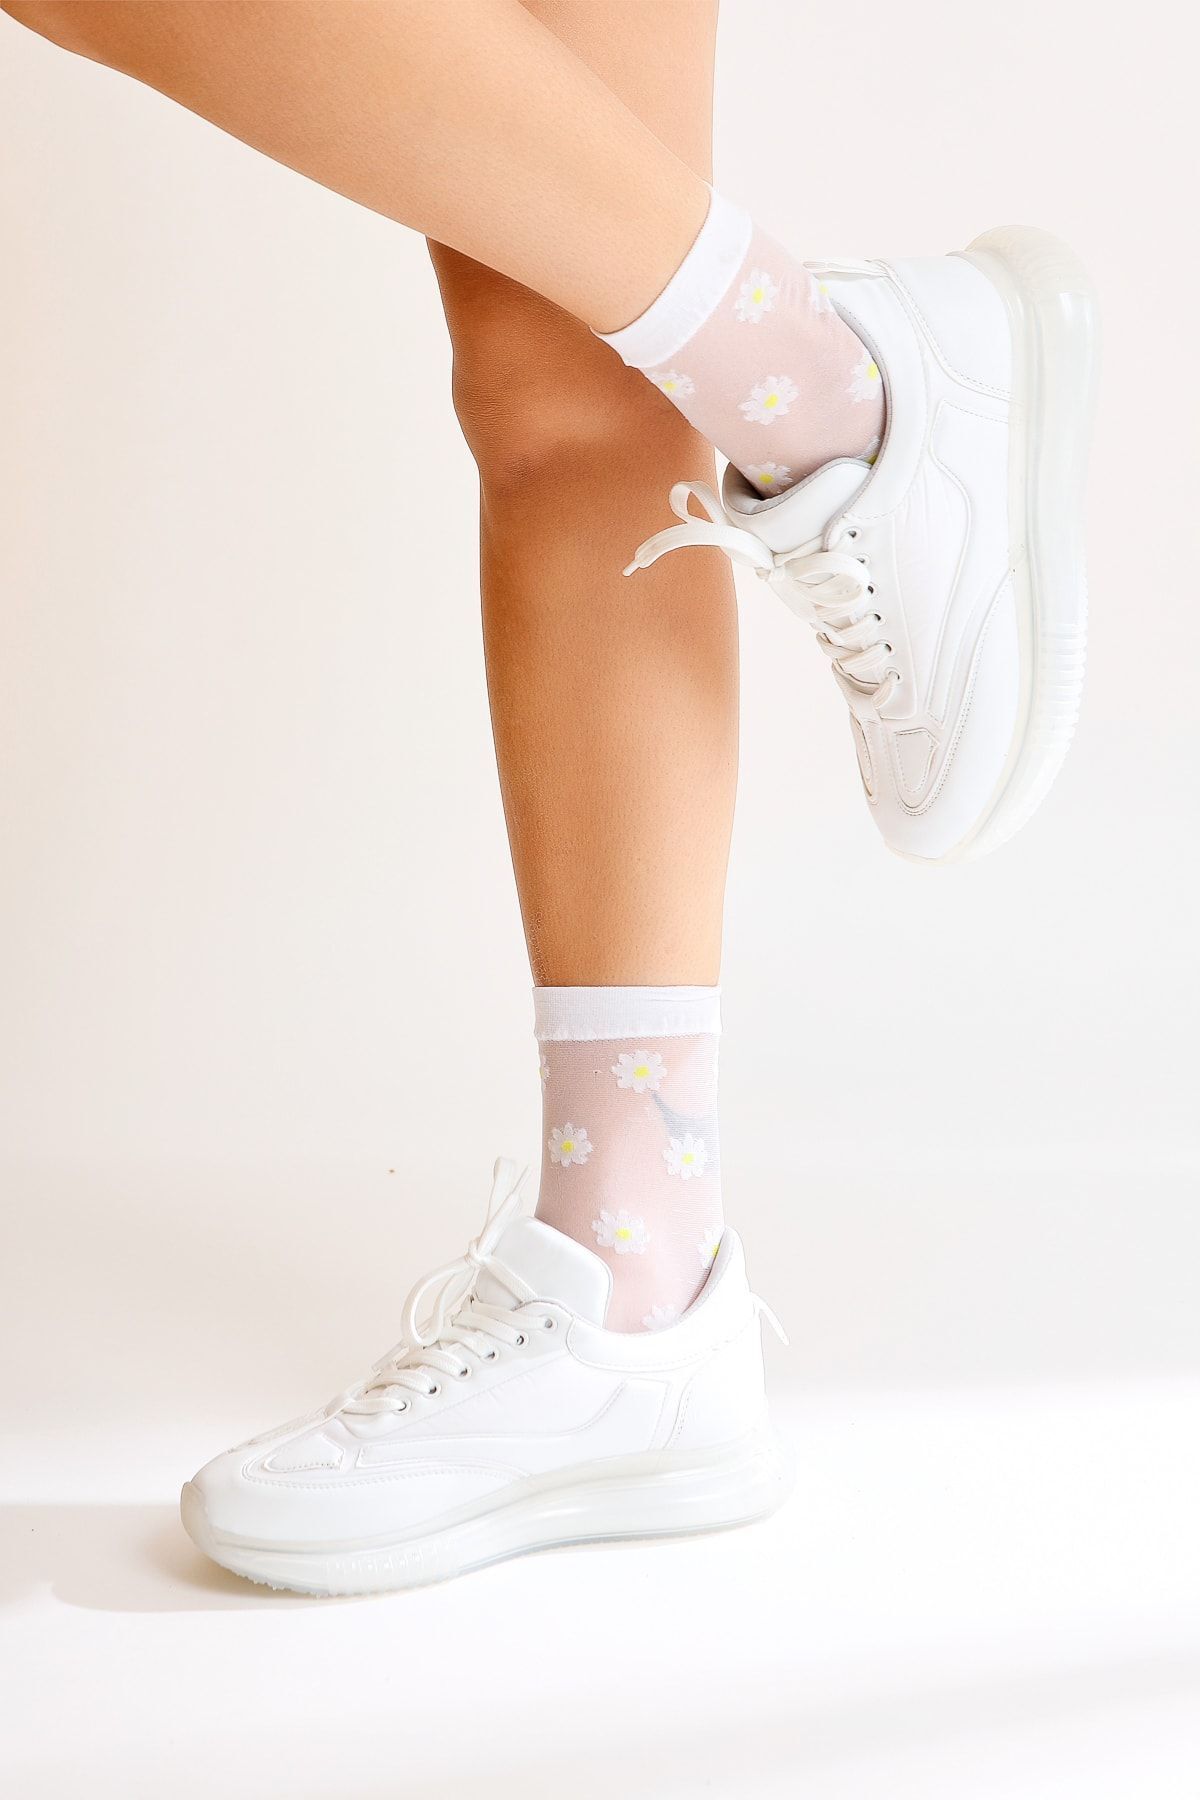 Limoya Nelda Beyaz Bağcıklı Sneakers Spor Ayakkabı